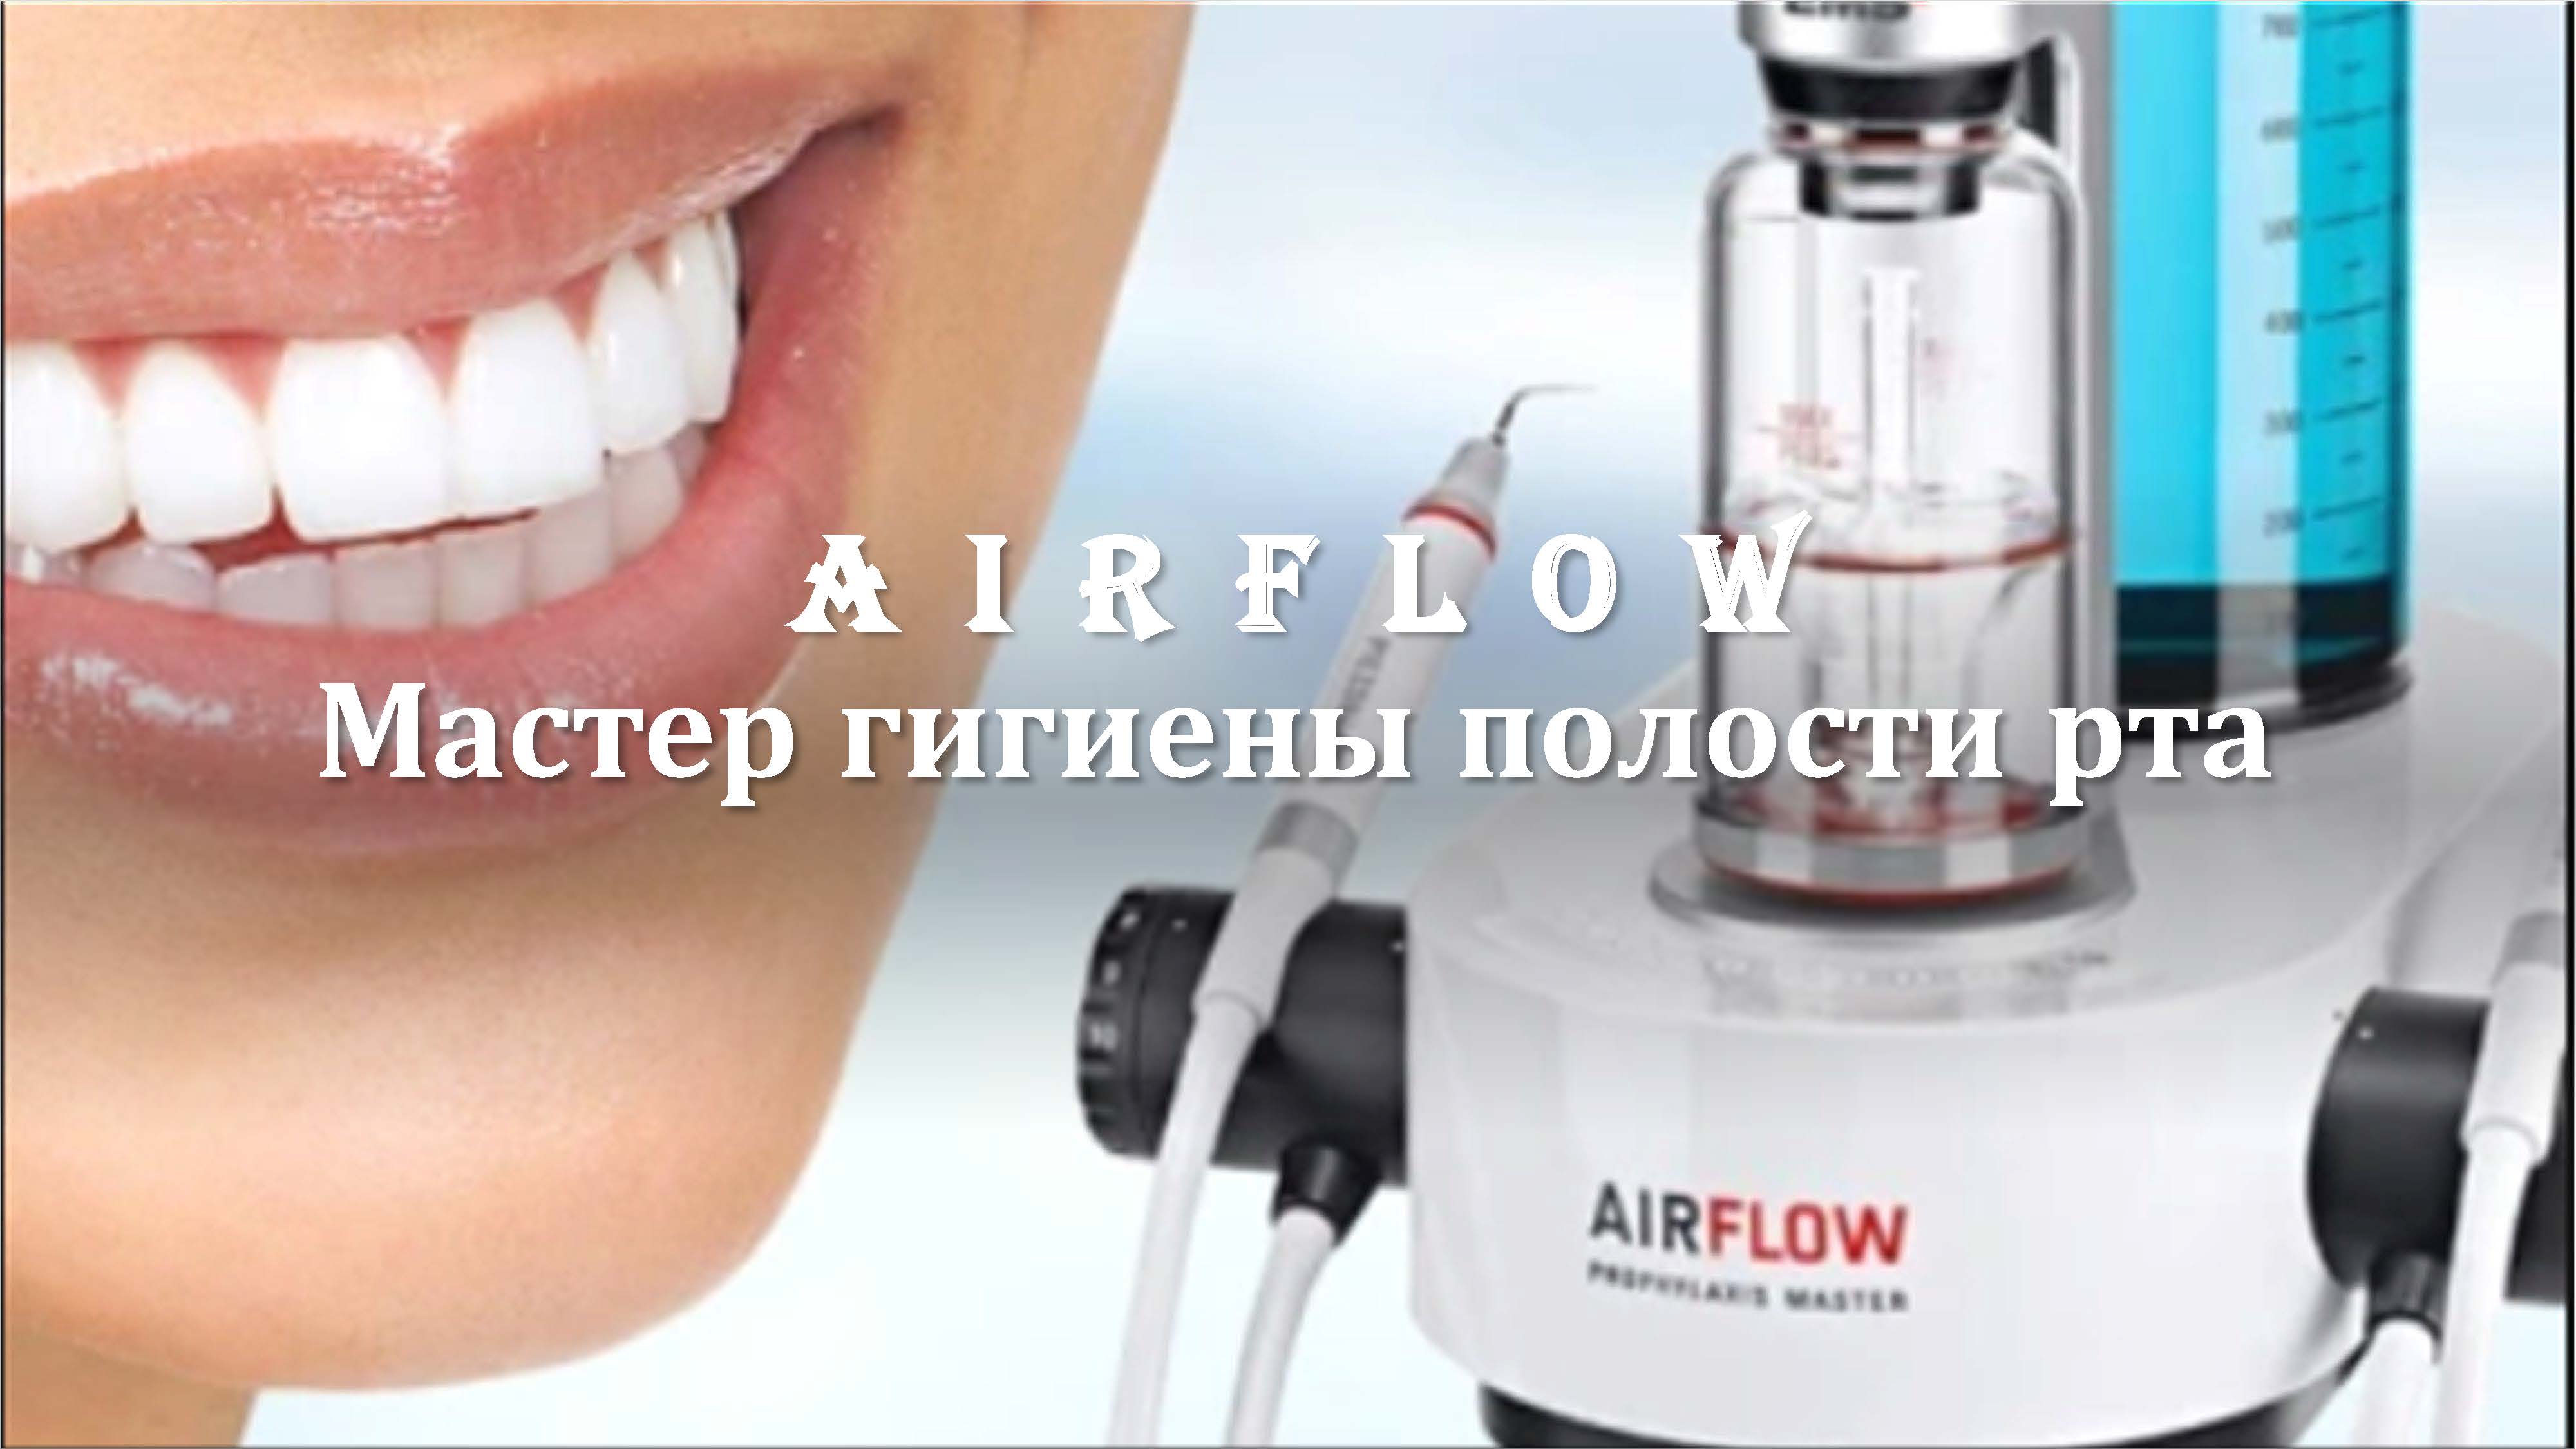 Лечение зубов с помощью AirFlow